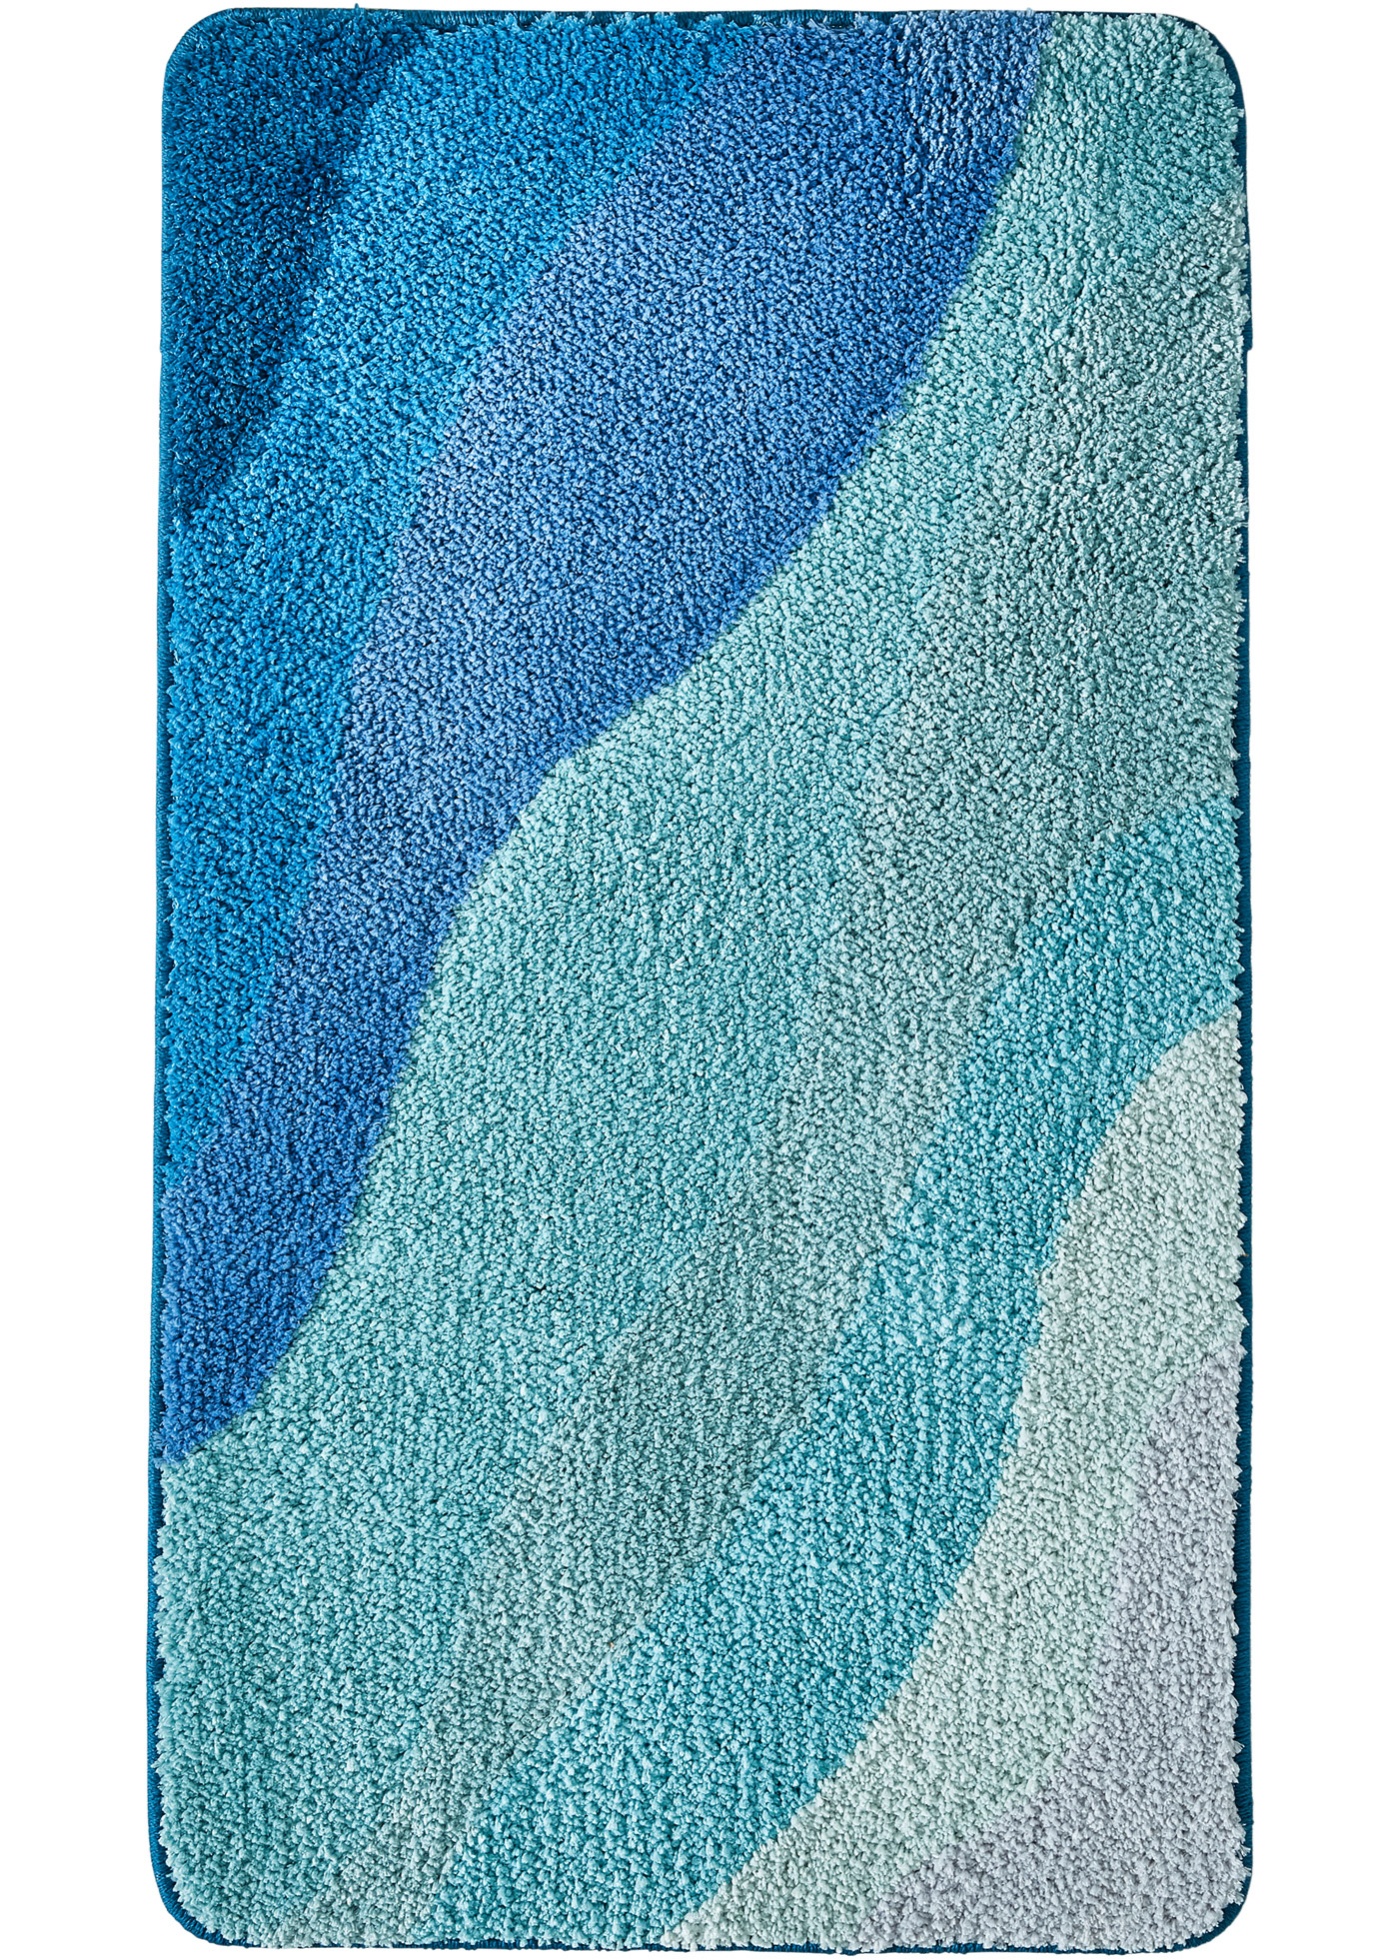 Getufte badmat in blauwtinten